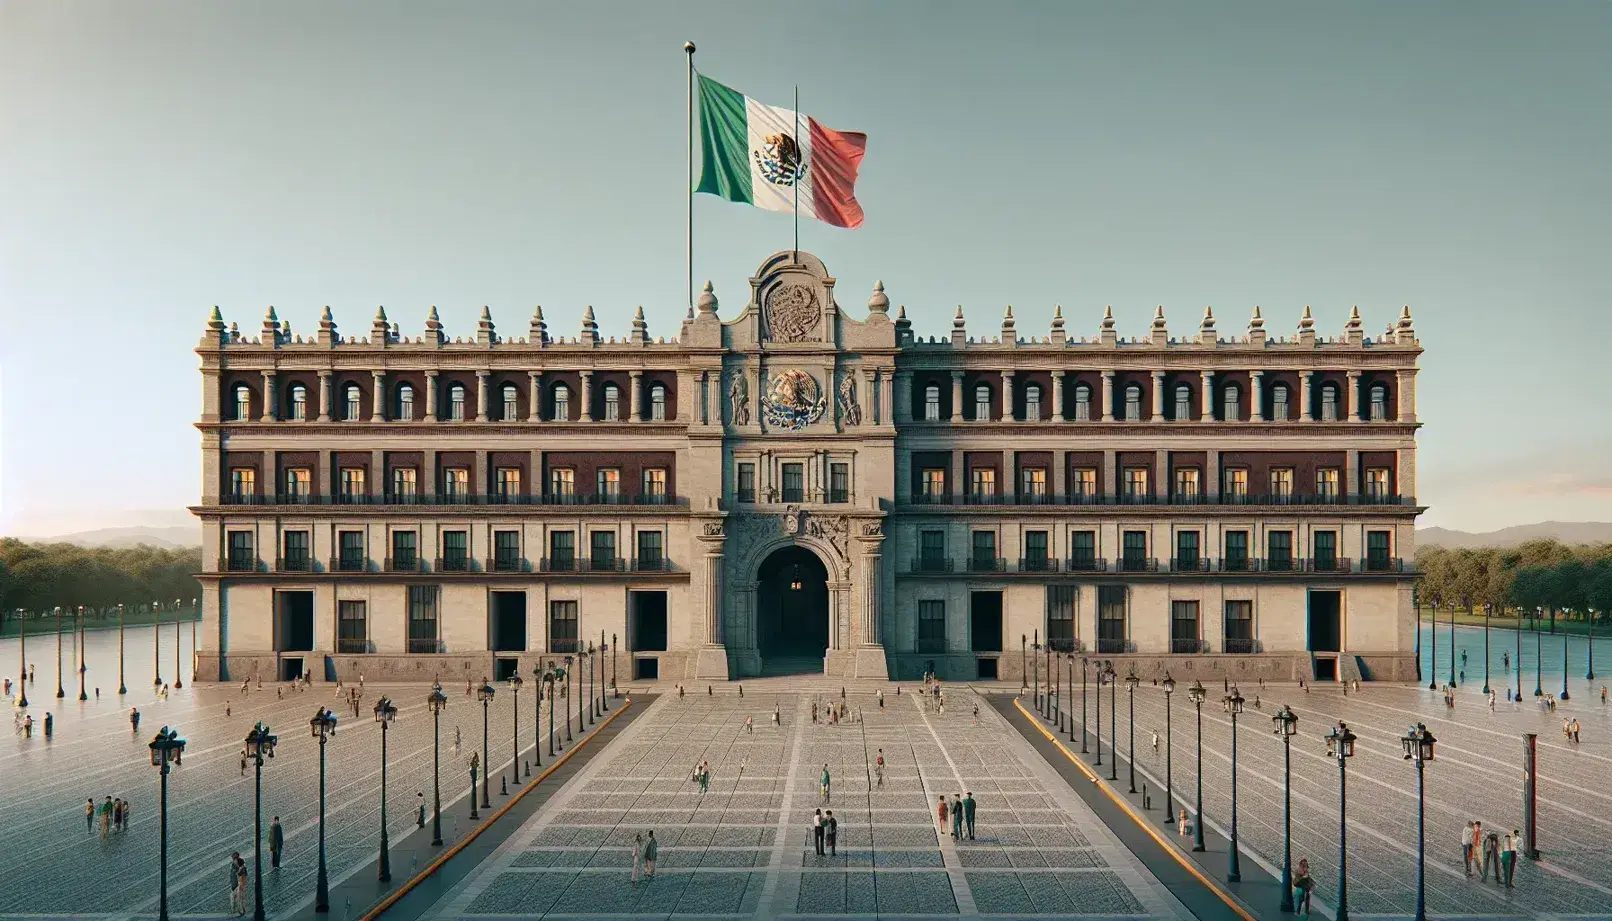 Vista frontal del Palacio Nacional de México con su fachada simétrica, entrada con arco central y bandera mexicana ondeante en la plaza adoquinada.